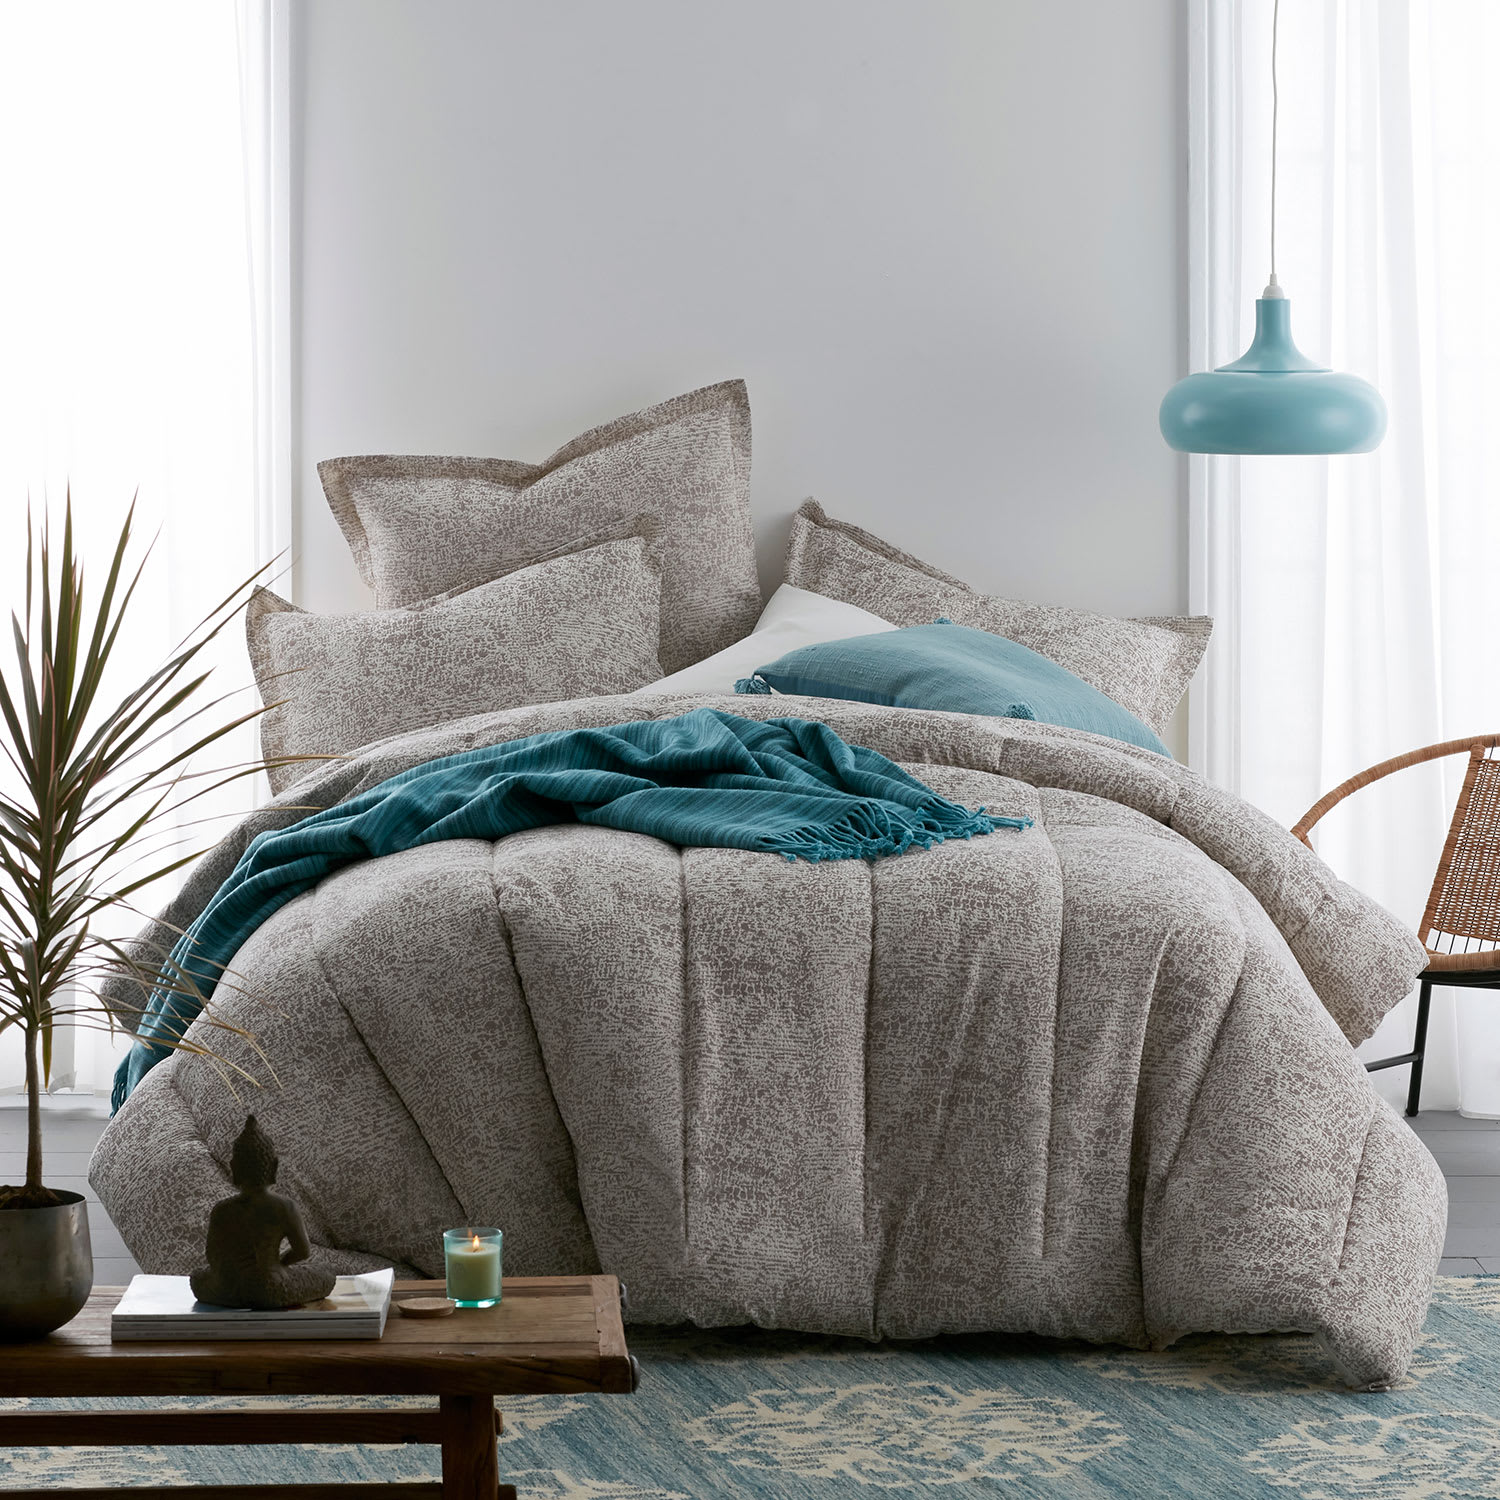 Cstudio Home Telluride Cotton Down Alternative Comforter - Taupe/Cream